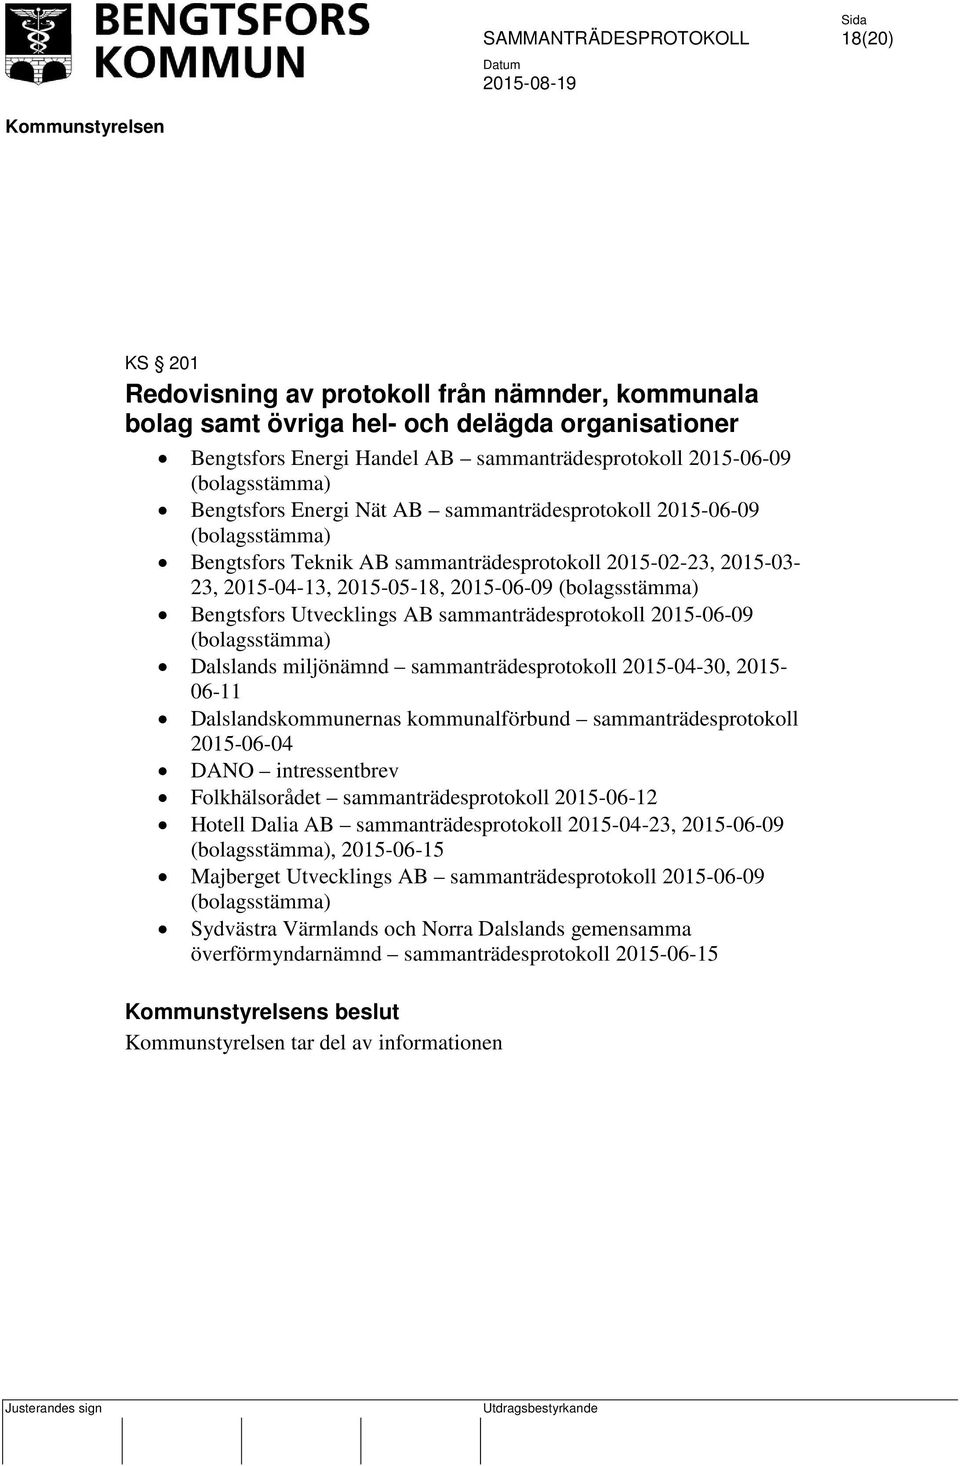 Utvecklings AB sammanträdesprotokoll 2015-06-09 (bolagsstämma) Dalslands miljönämnd sammanträdesprotokoll 2015-04-30, 2015-06-11 Dalslandskommunernas kommunalförbund sammanträdesprotokoll 2015-06-04